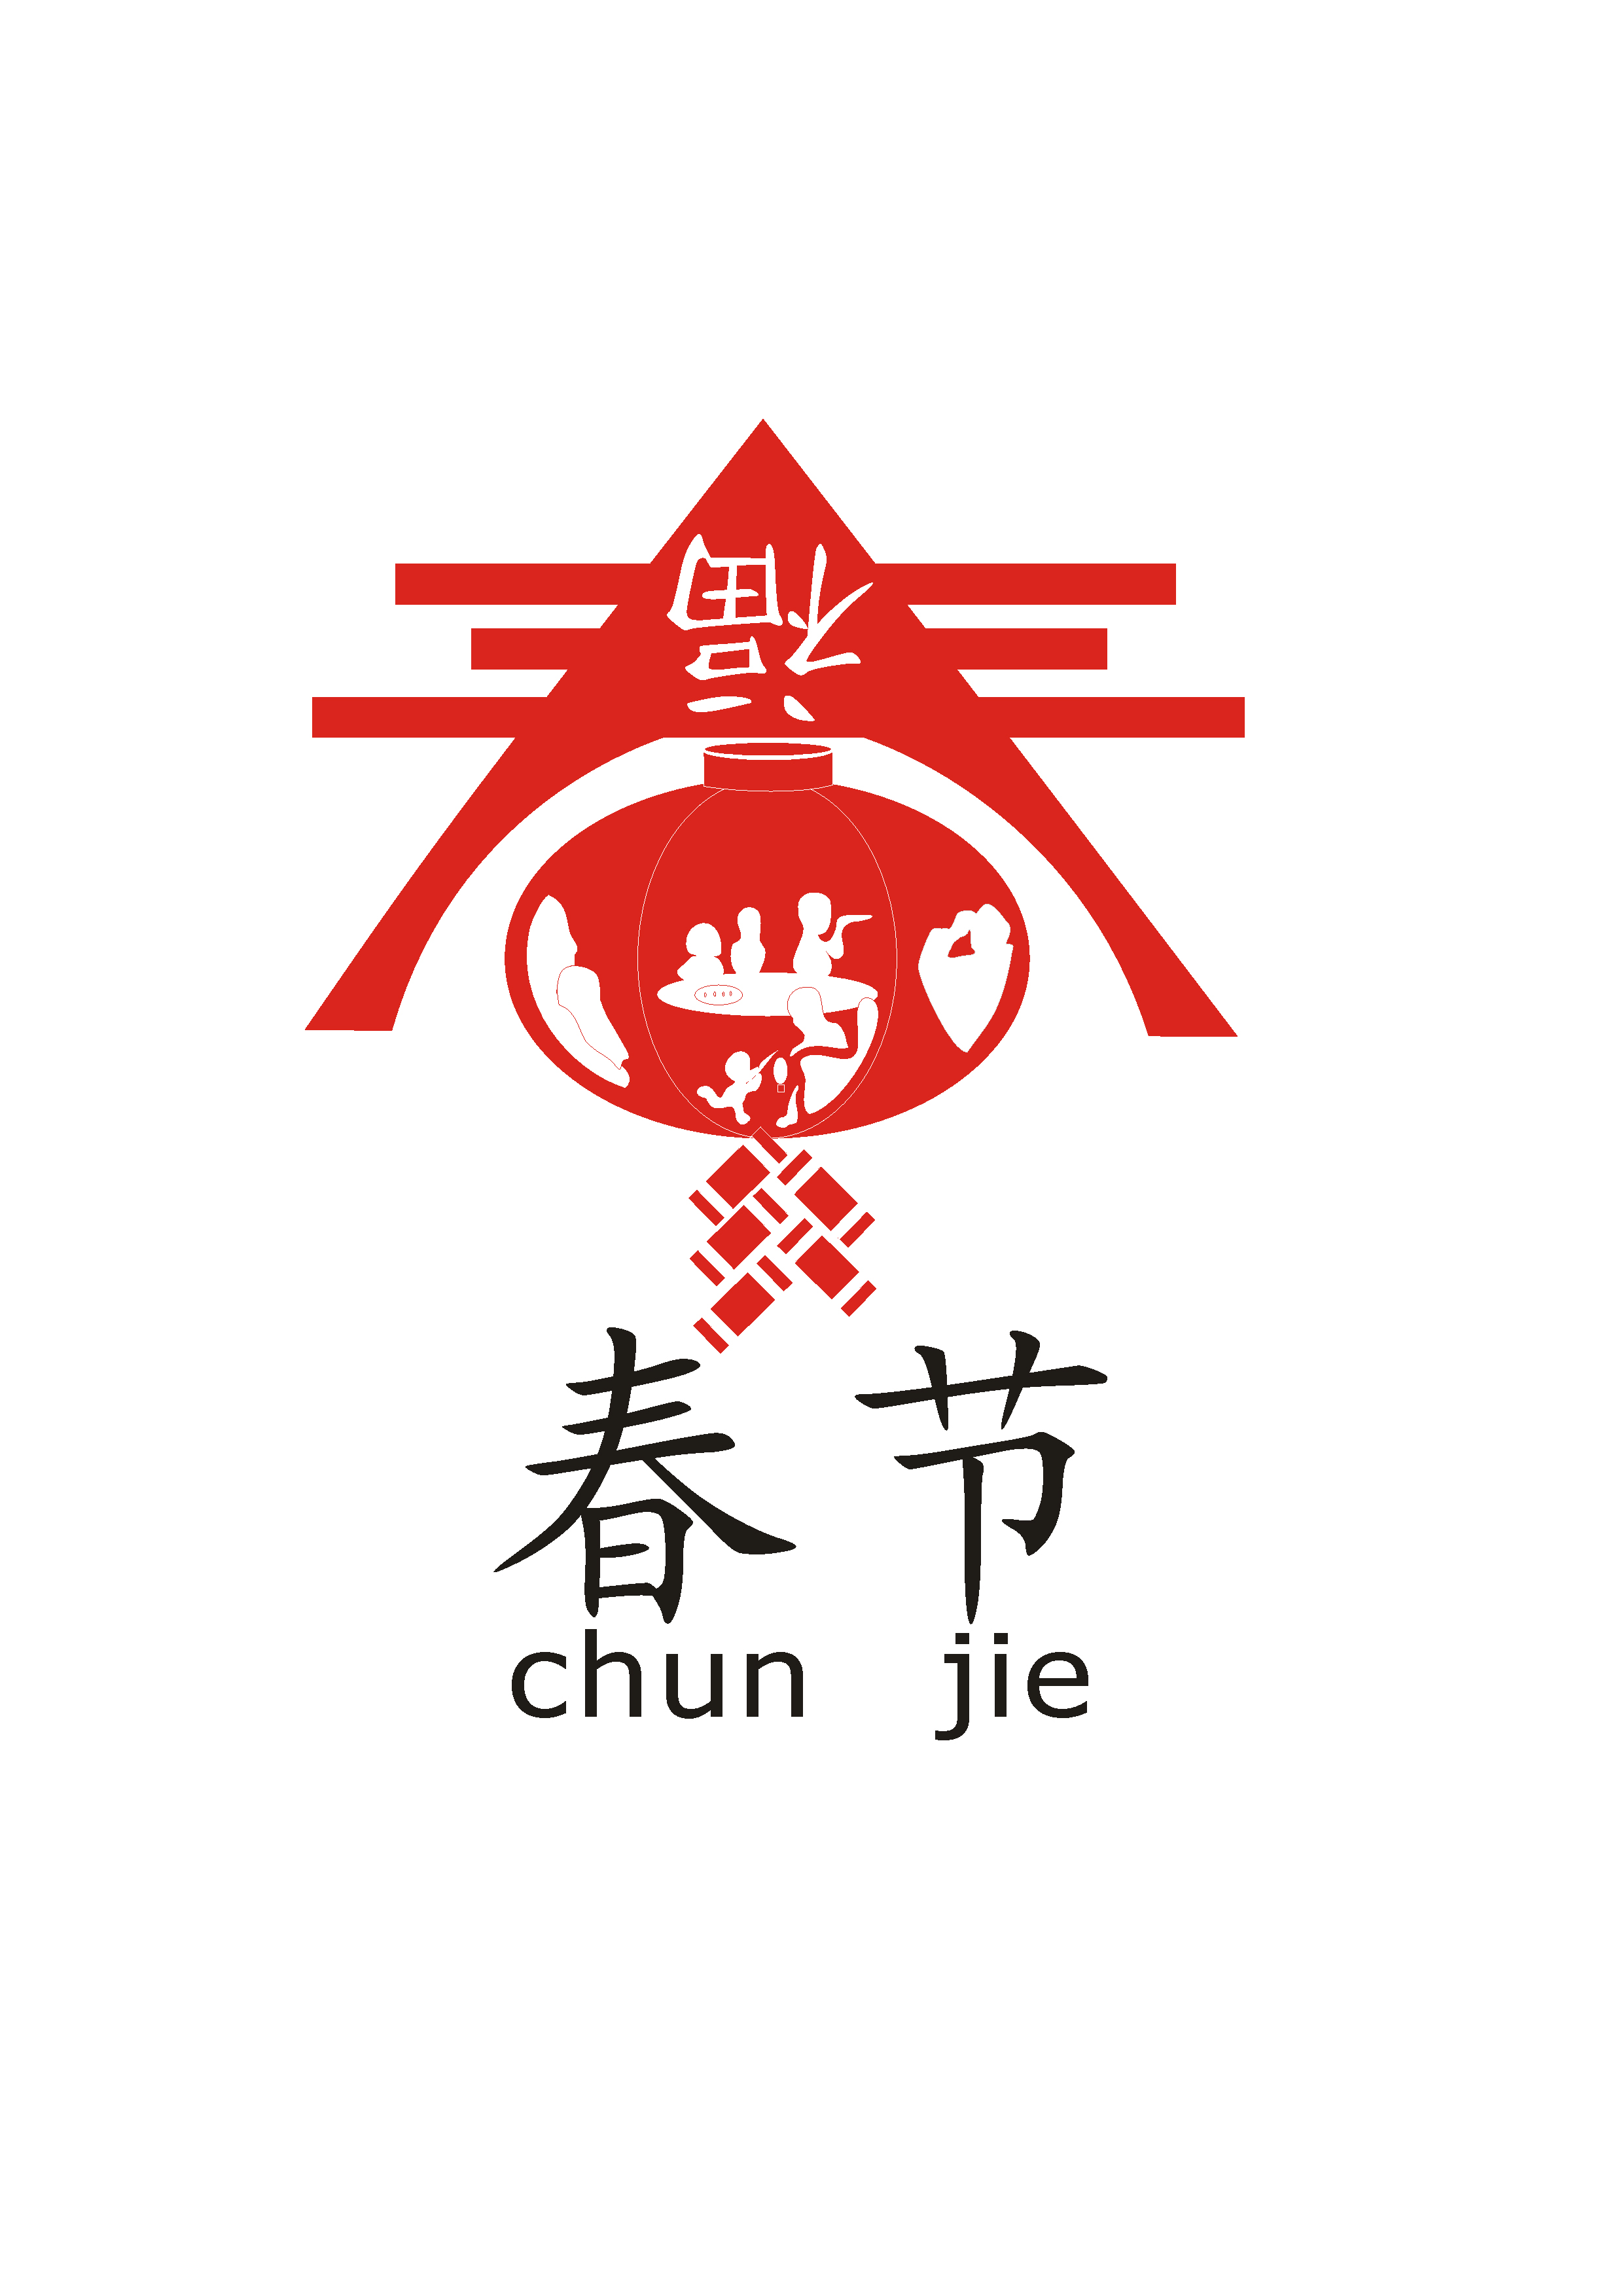 春节主题形象标识(logo)征集